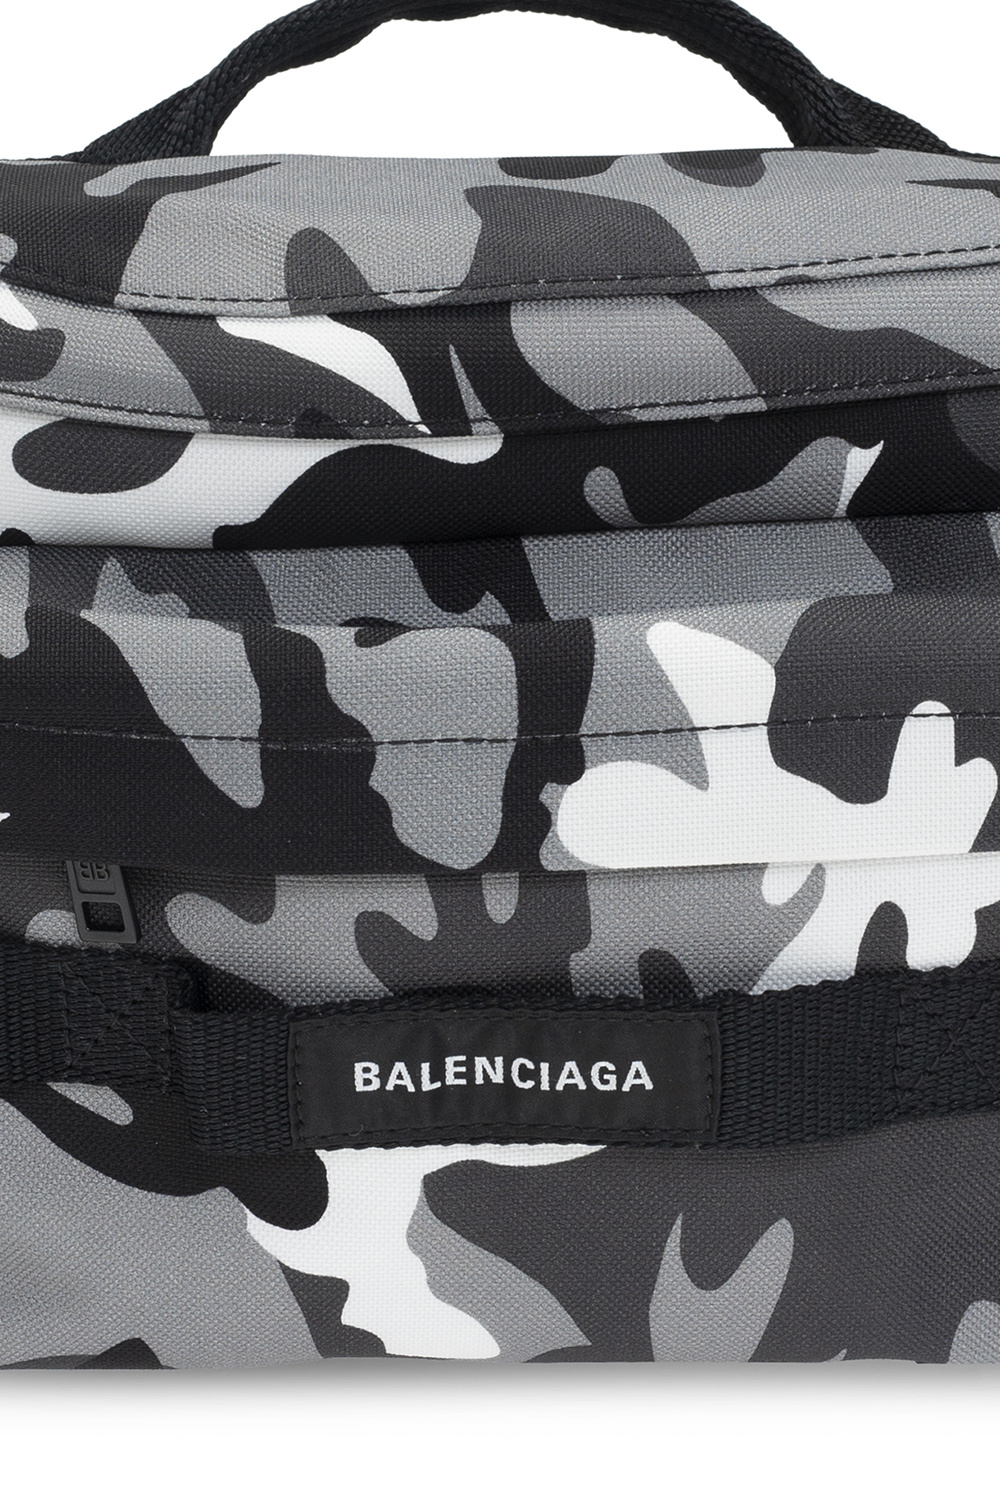 Balenciaga Black Army Messenger Bag for Men